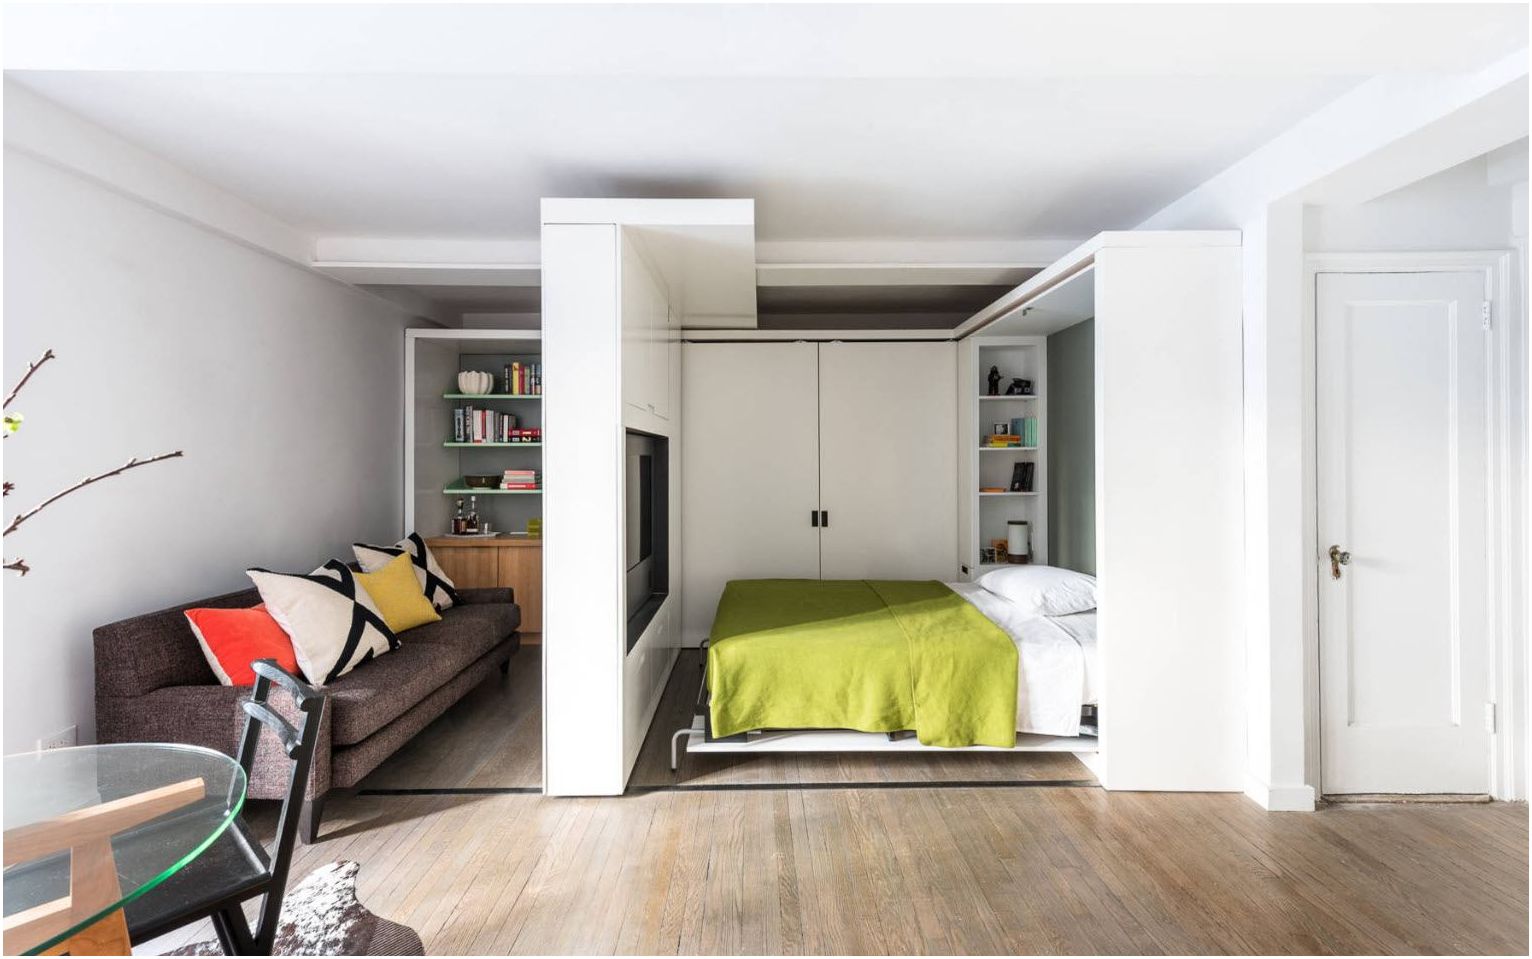 Framgångsrika exempel på att kombinera ett sovrum och ett vardagsrum i ett rum